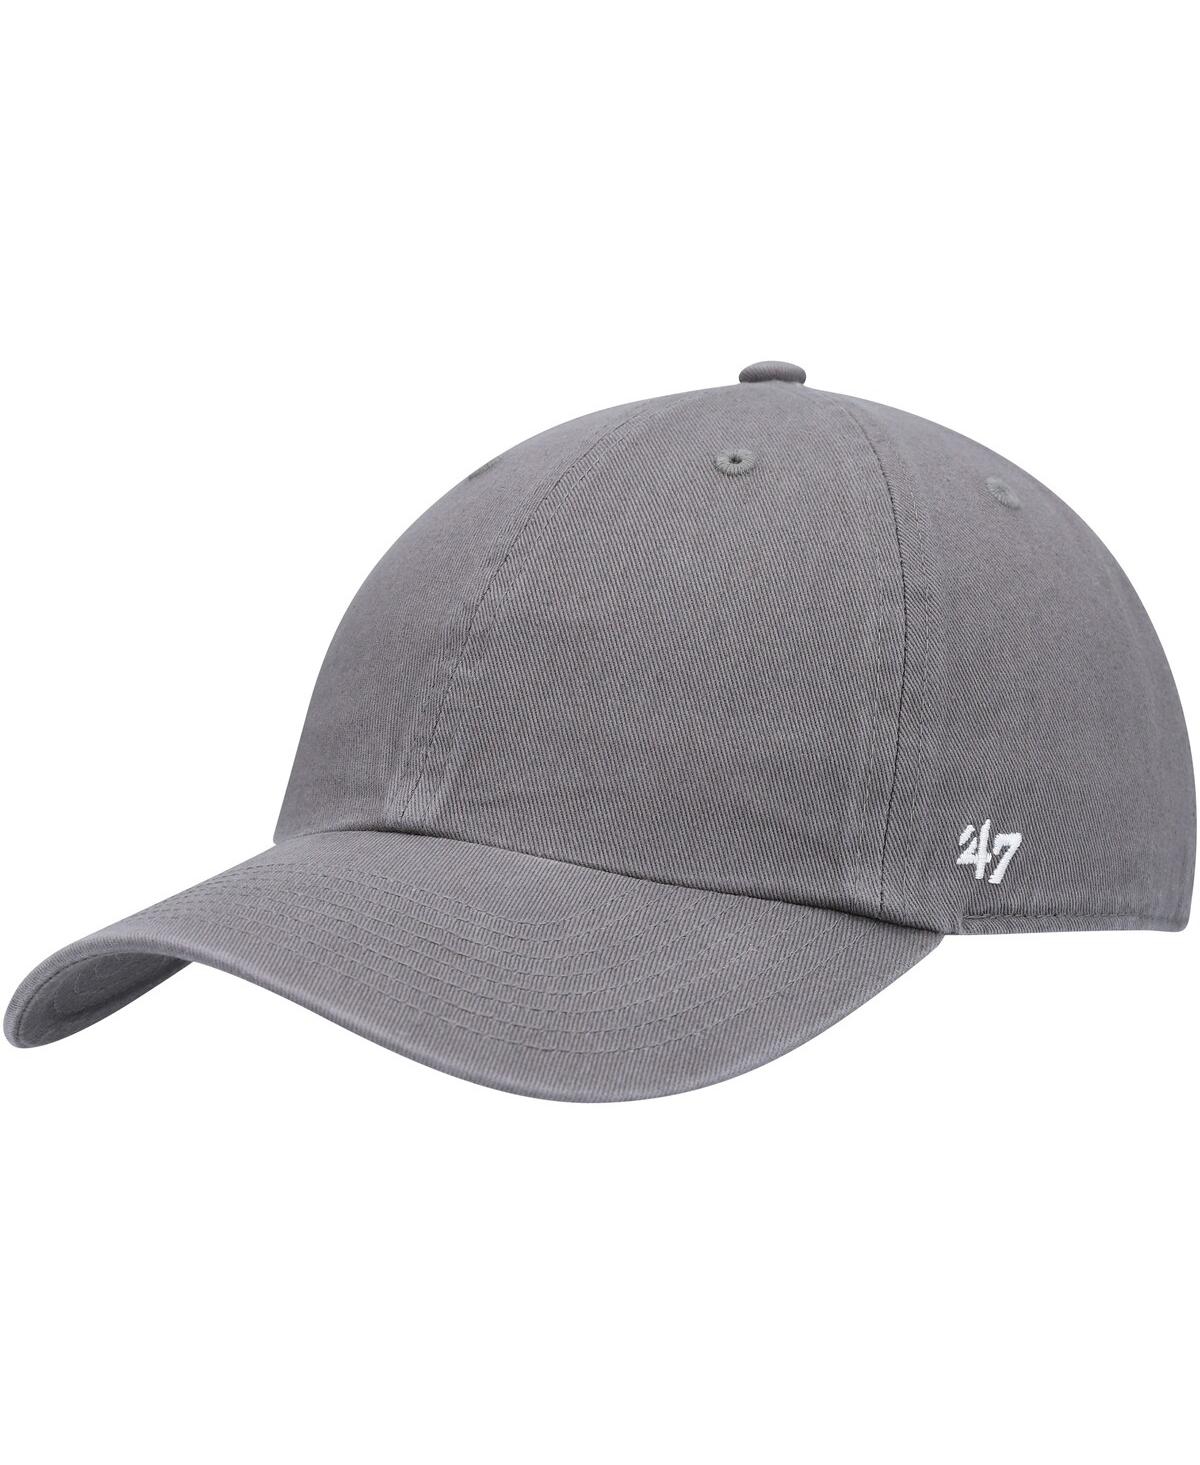 47 Brand Men's '47 Gray Clean Up Adjustable Hat